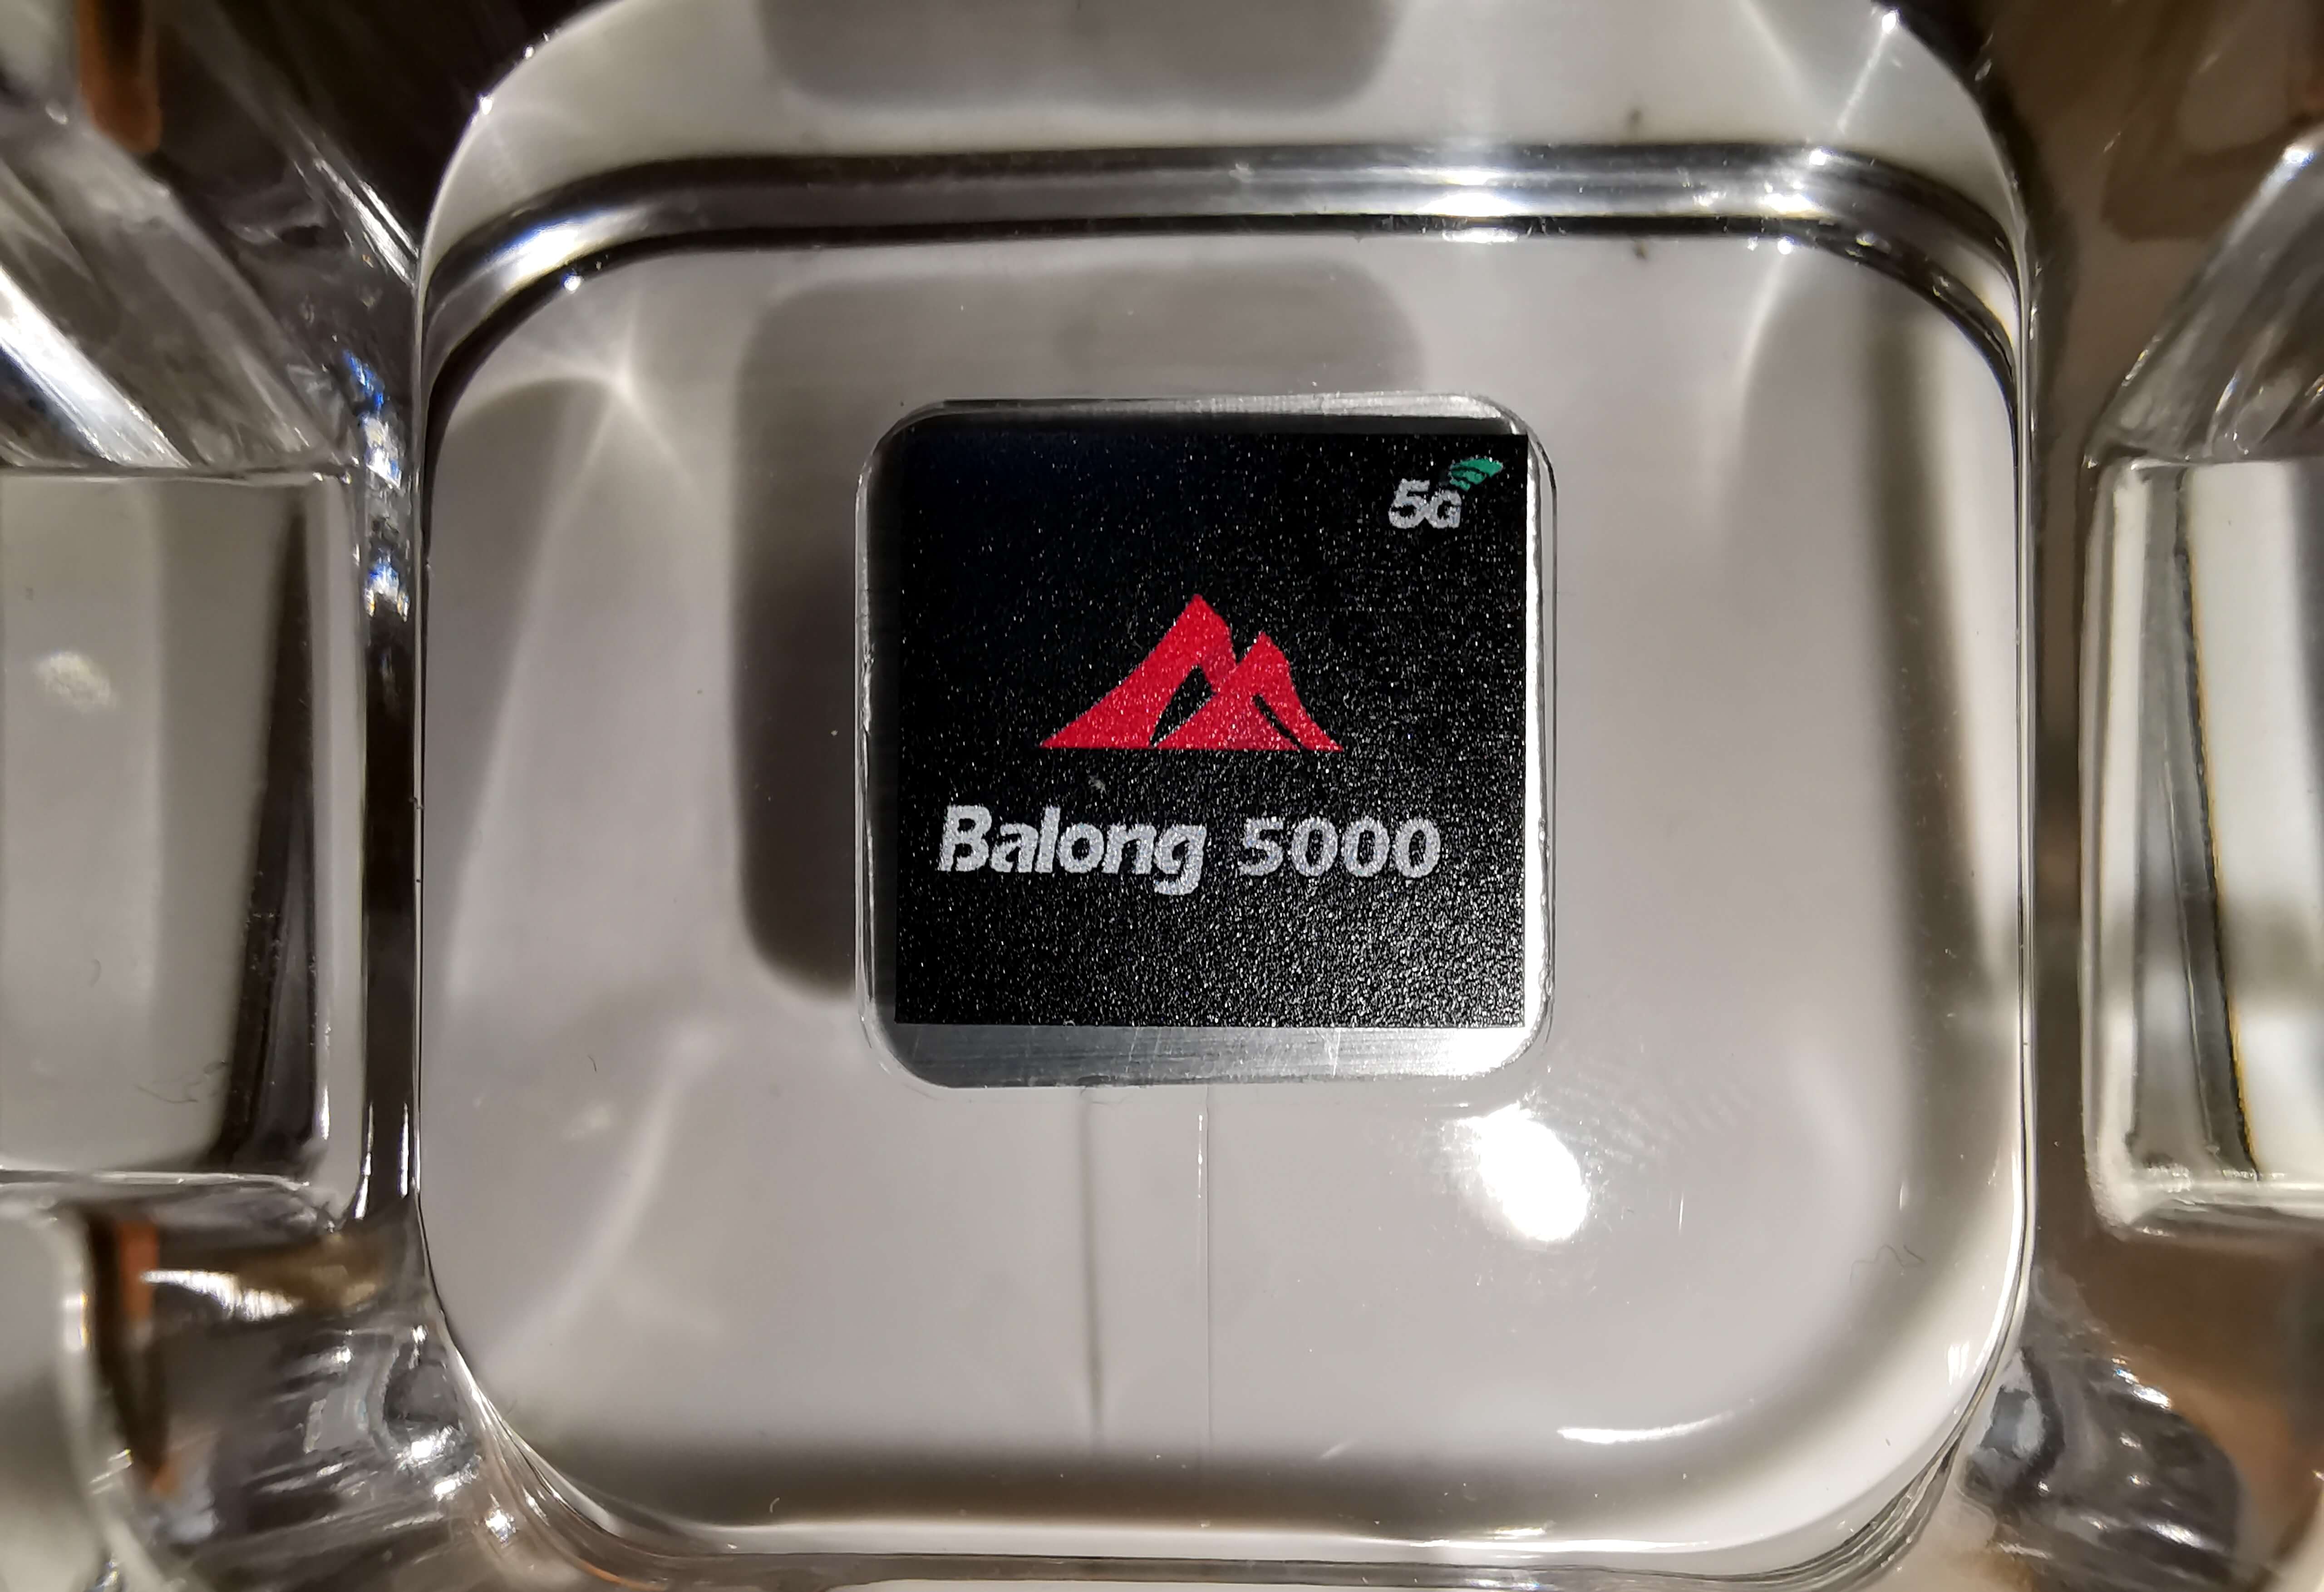 Balong 5000